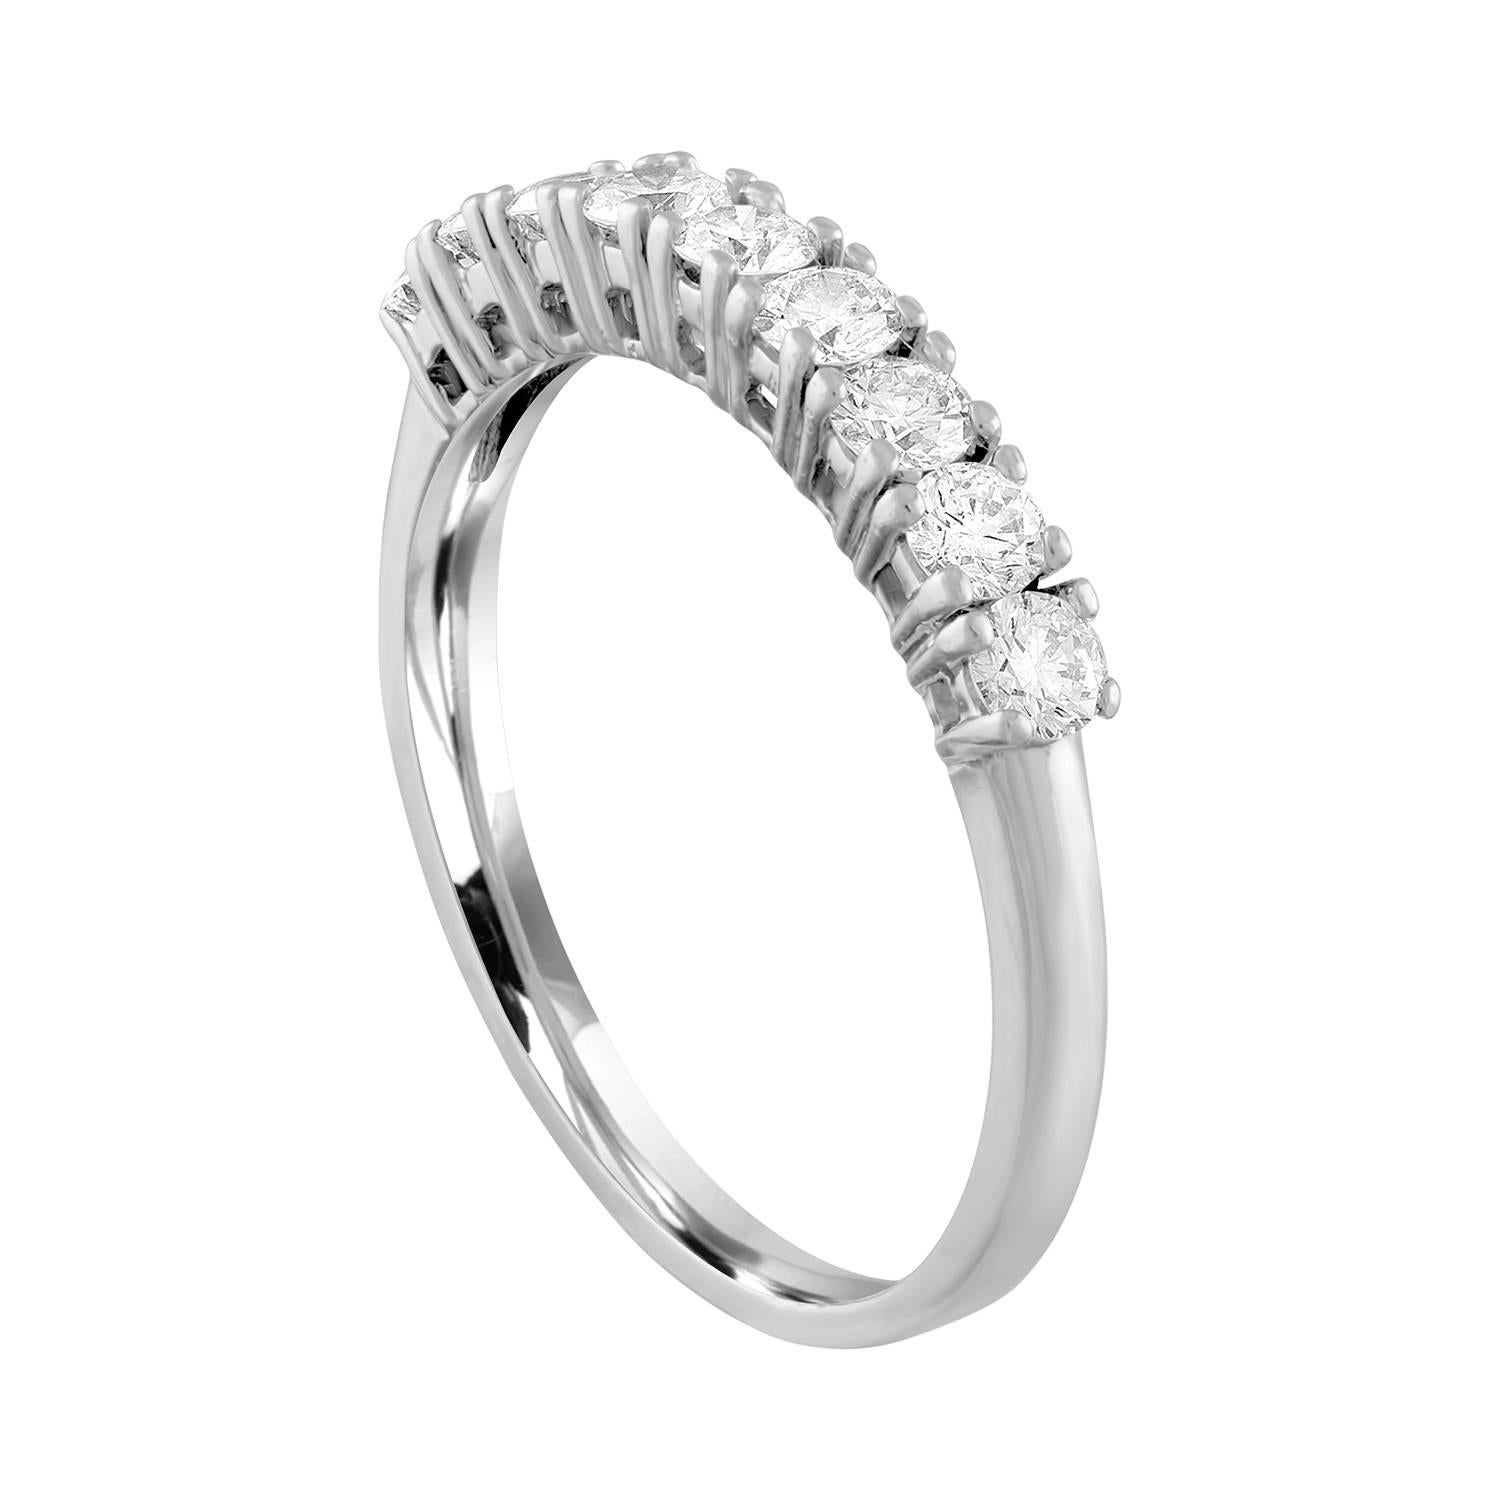 Sehr schöner halber Diamantbandring.
Der Ring ist aus 14K Weißgold.
Es sind 9 Diamanten mit Rundschliff in Zacken gesetzt.
Es gibt 0,90 Karat in Diamanten G/H SI.
Der Ring ist eine Größe 9,5, sizable. 
Das Band ist 3,30 mm breit und verjüngt sich